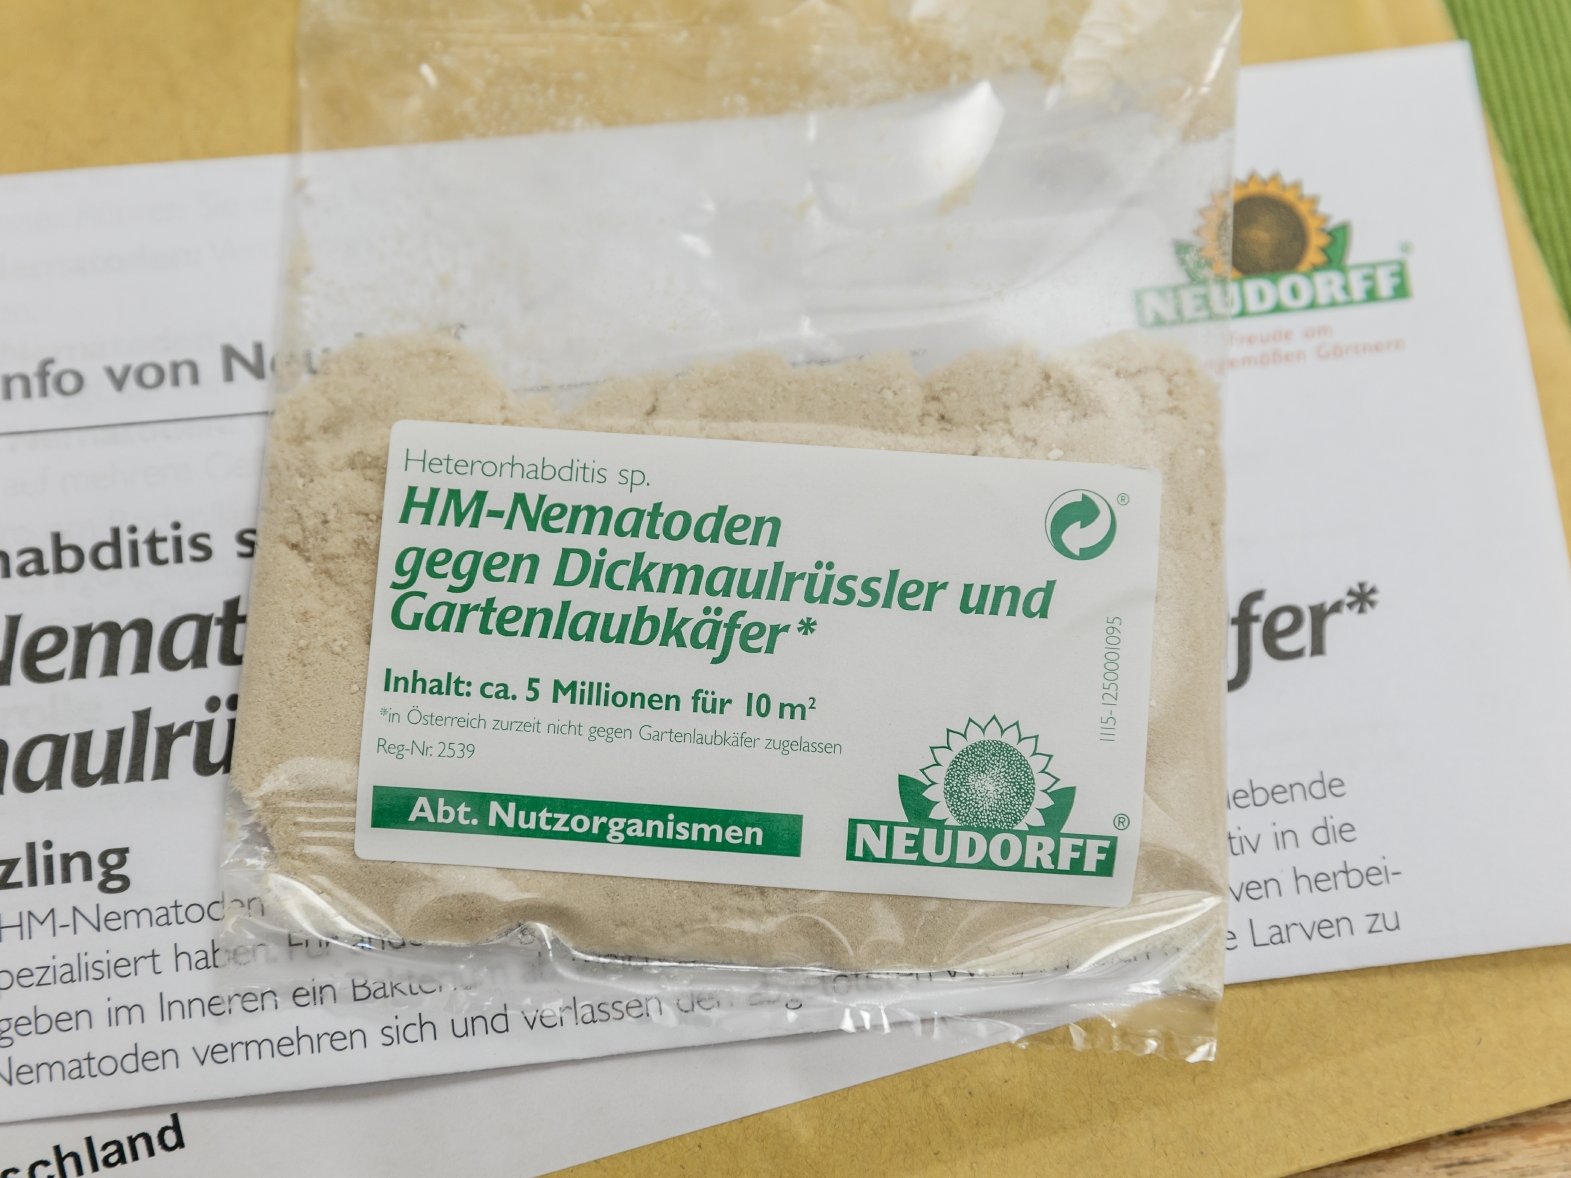 Zur Bekämpfung des Dickmaulrüsslers lassen sich HM-Nematoden einsetzen